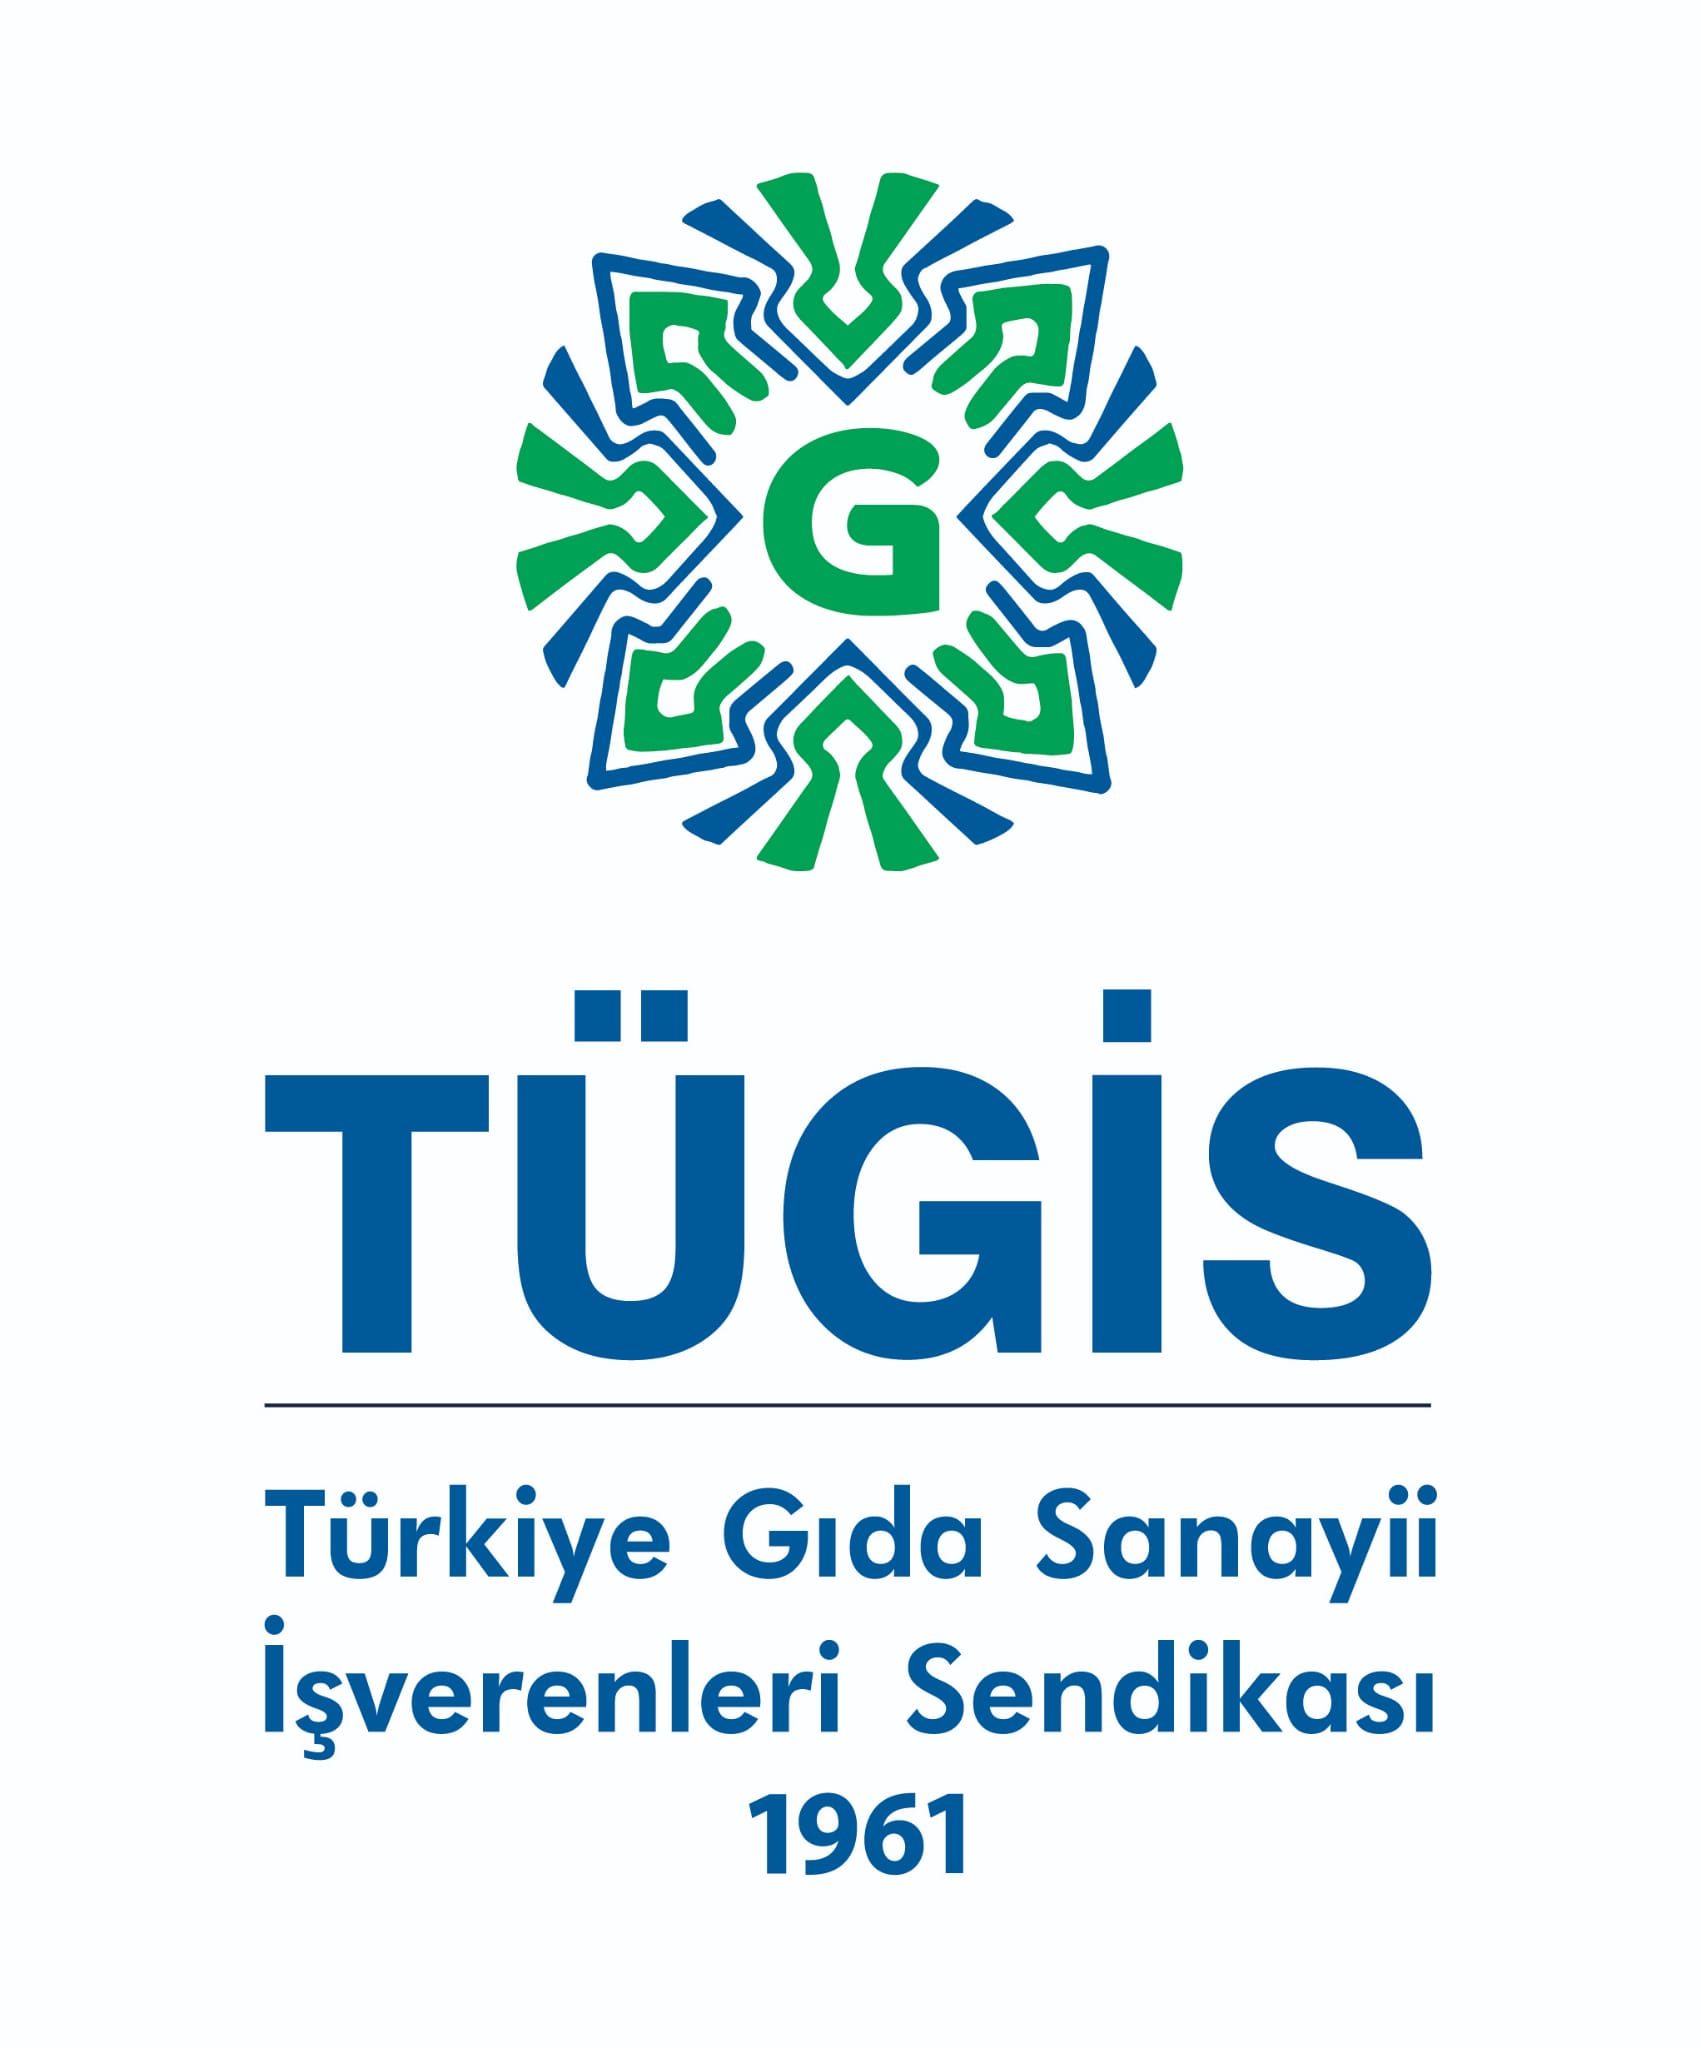 1705914402-t-g-s-logo.jpg